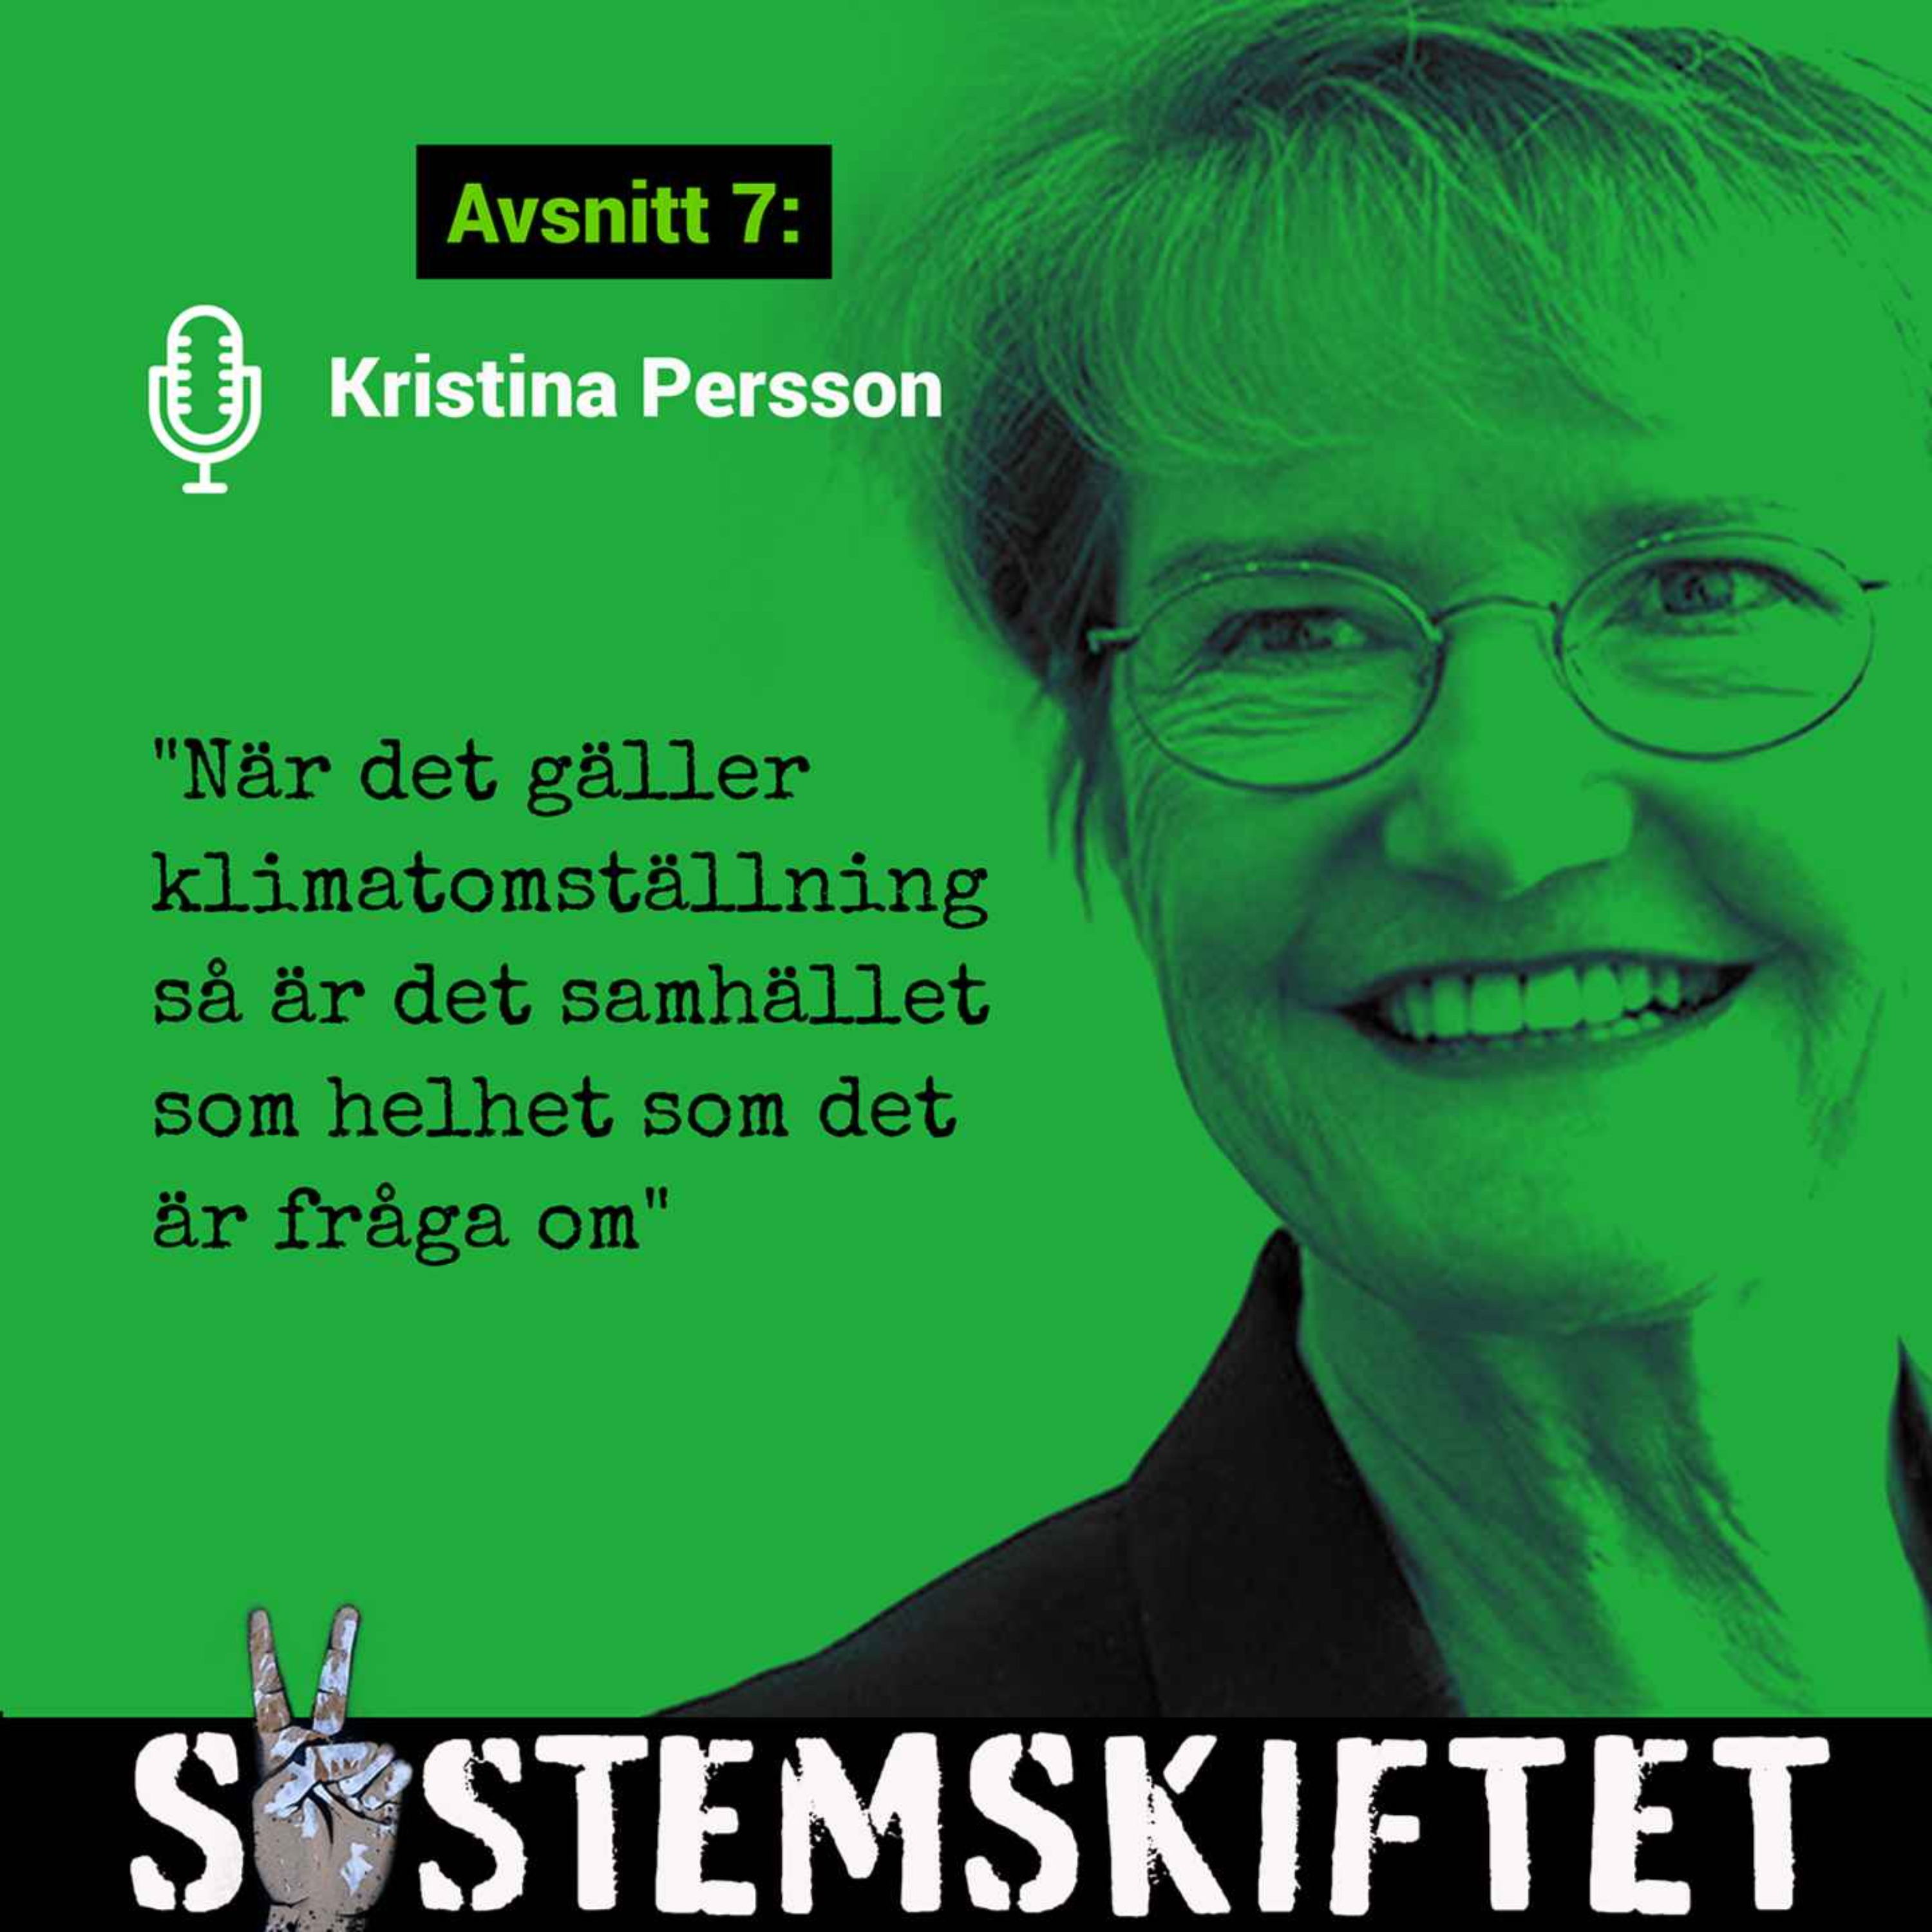 F.d framtidsministern Kristina Persson: Demokrati, samverkan och kreativitet för gemensamma mål